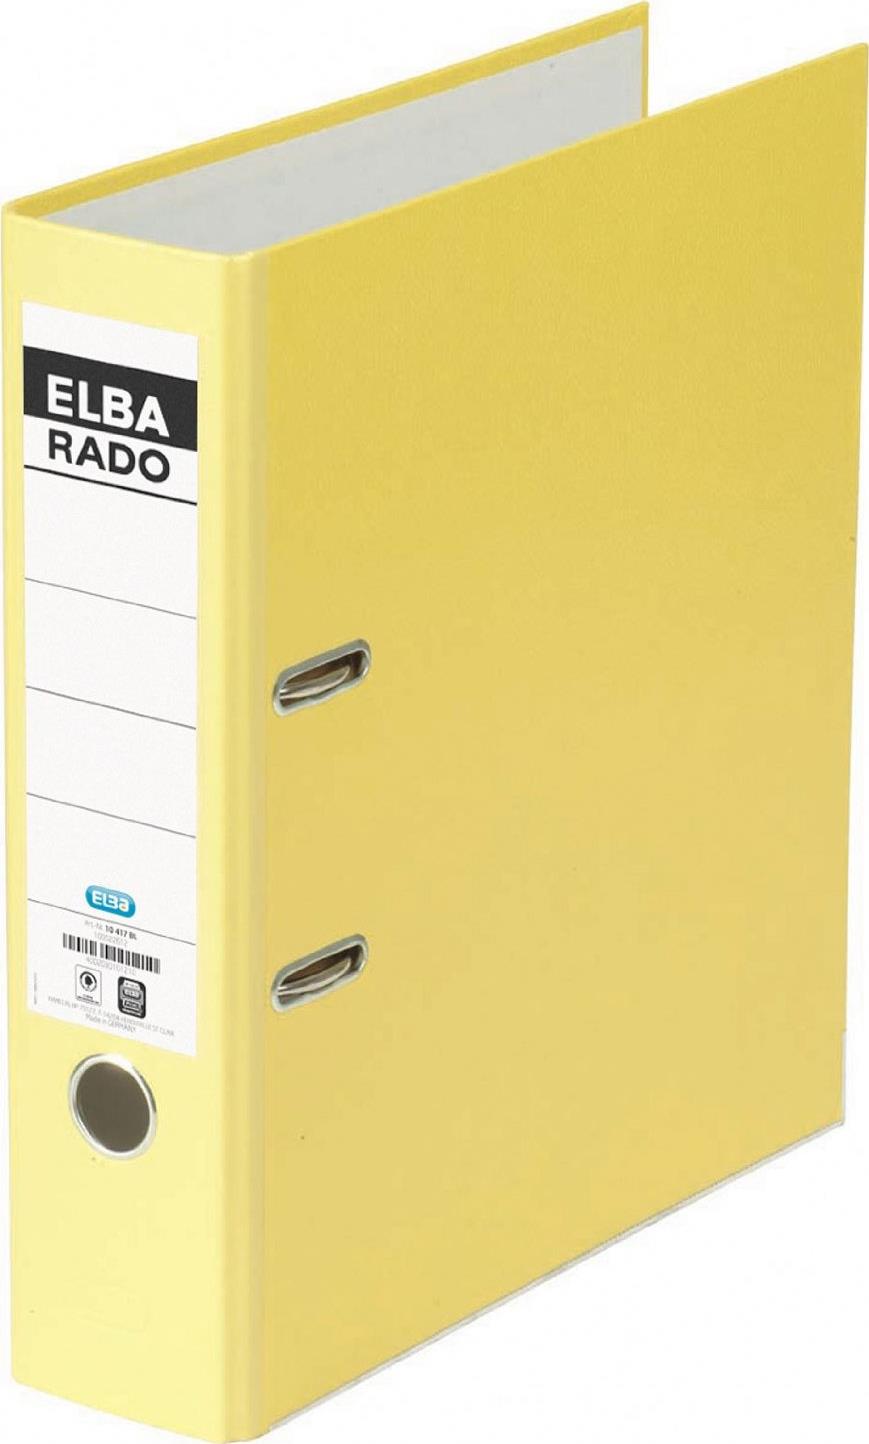 ELBA Ordner rado brillant, R�ckenbreite: 80 mm, gelb DIN A4, Einband au�en / innen aus Acrylaten veredeltem (10417 GB) von ELBA